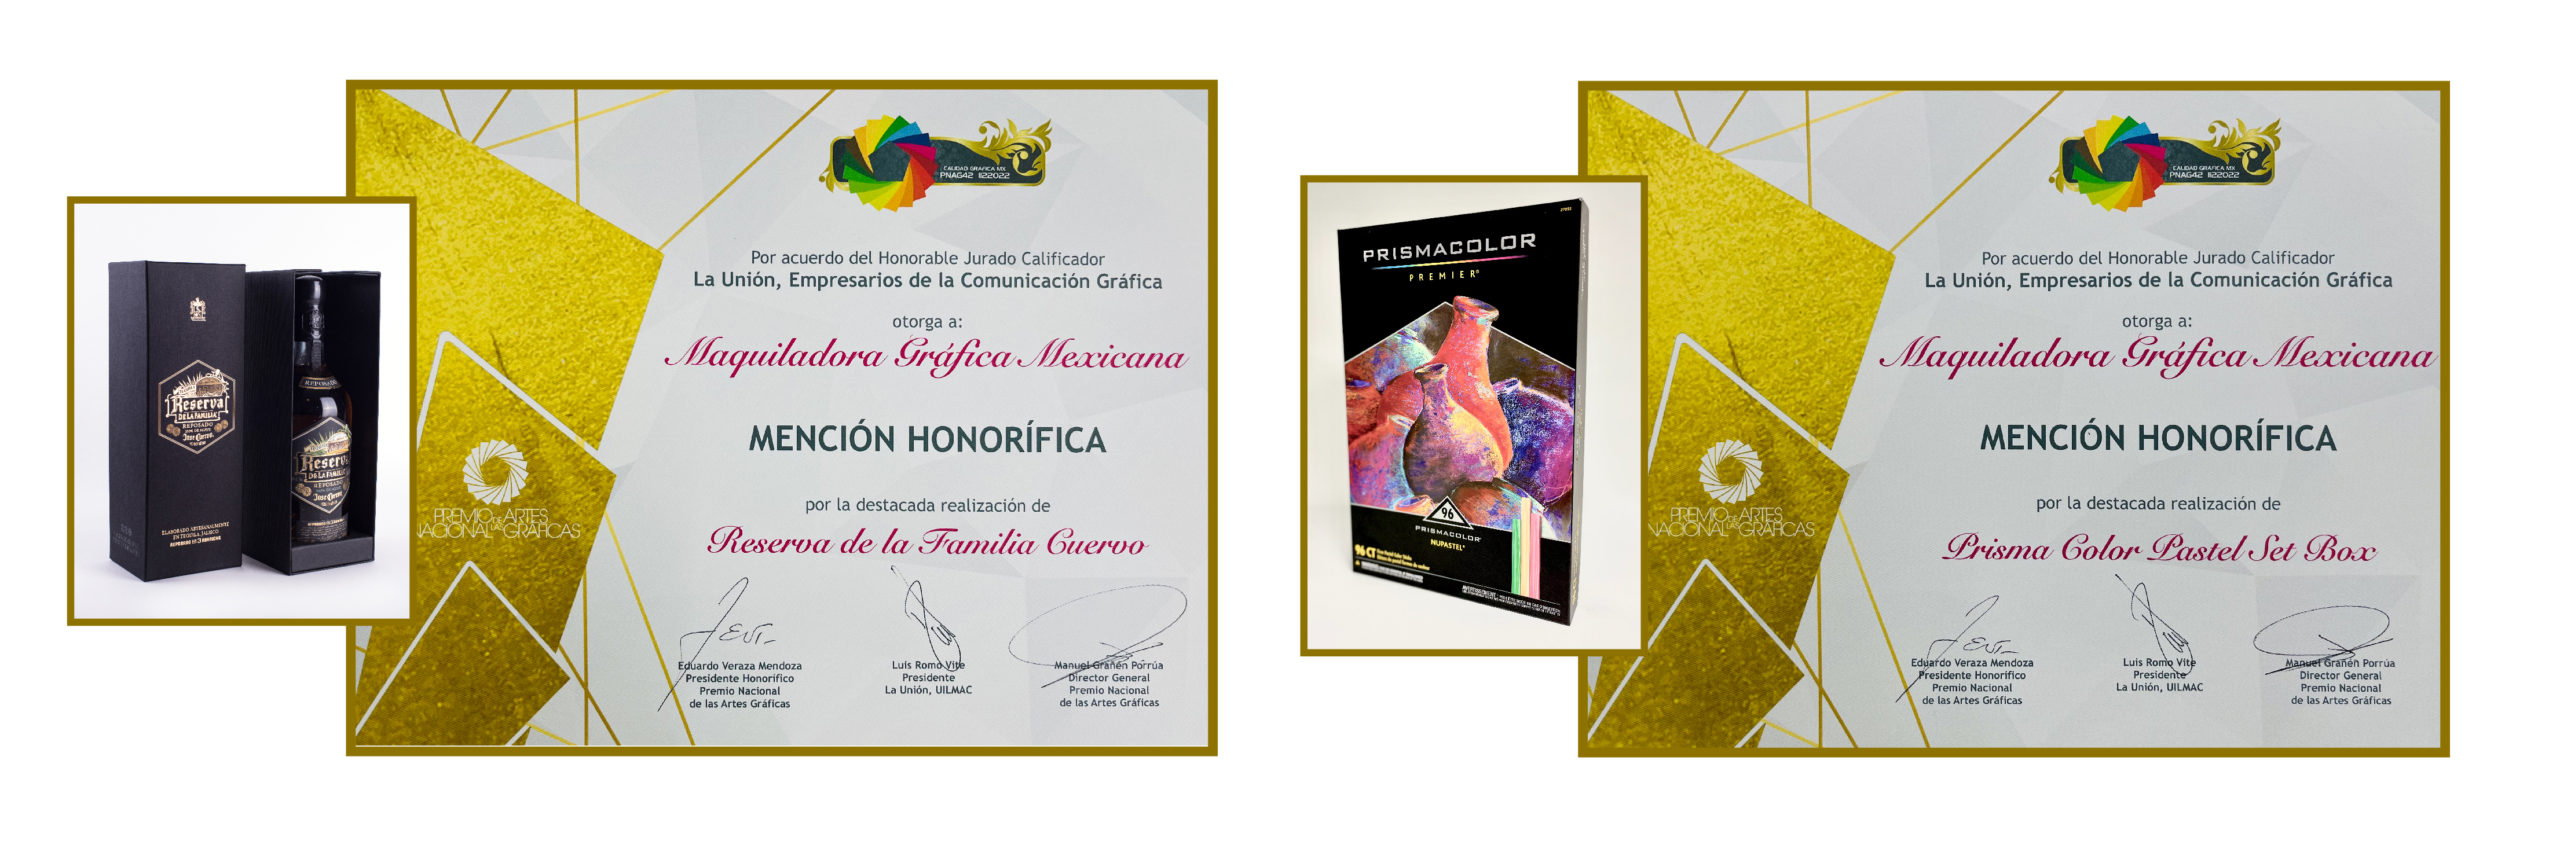 Maquiladora Gráfica Mexicana Premios